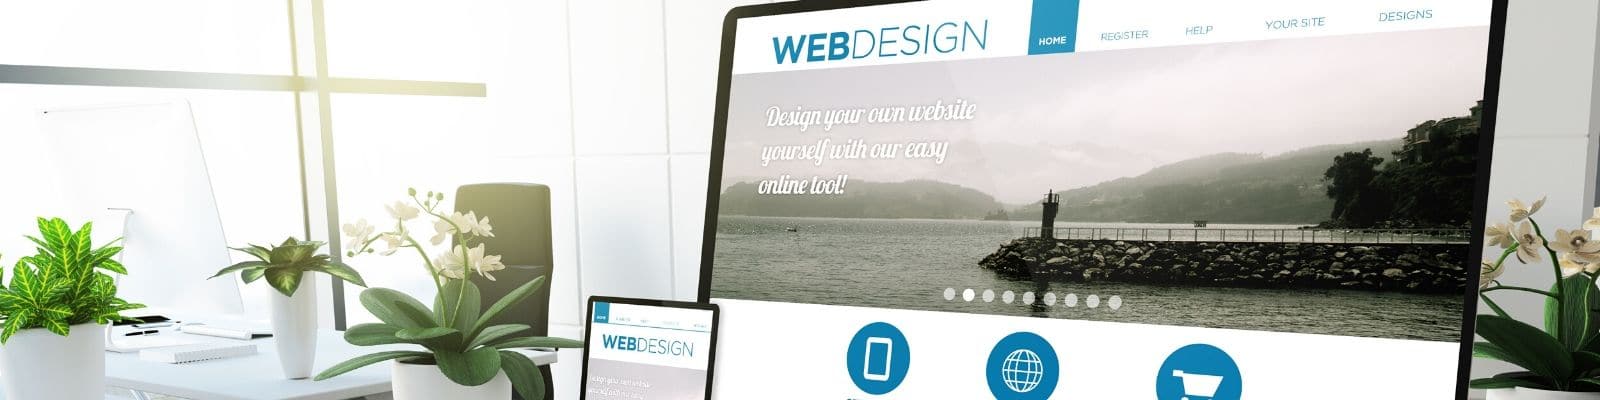 web design trends, website design tips